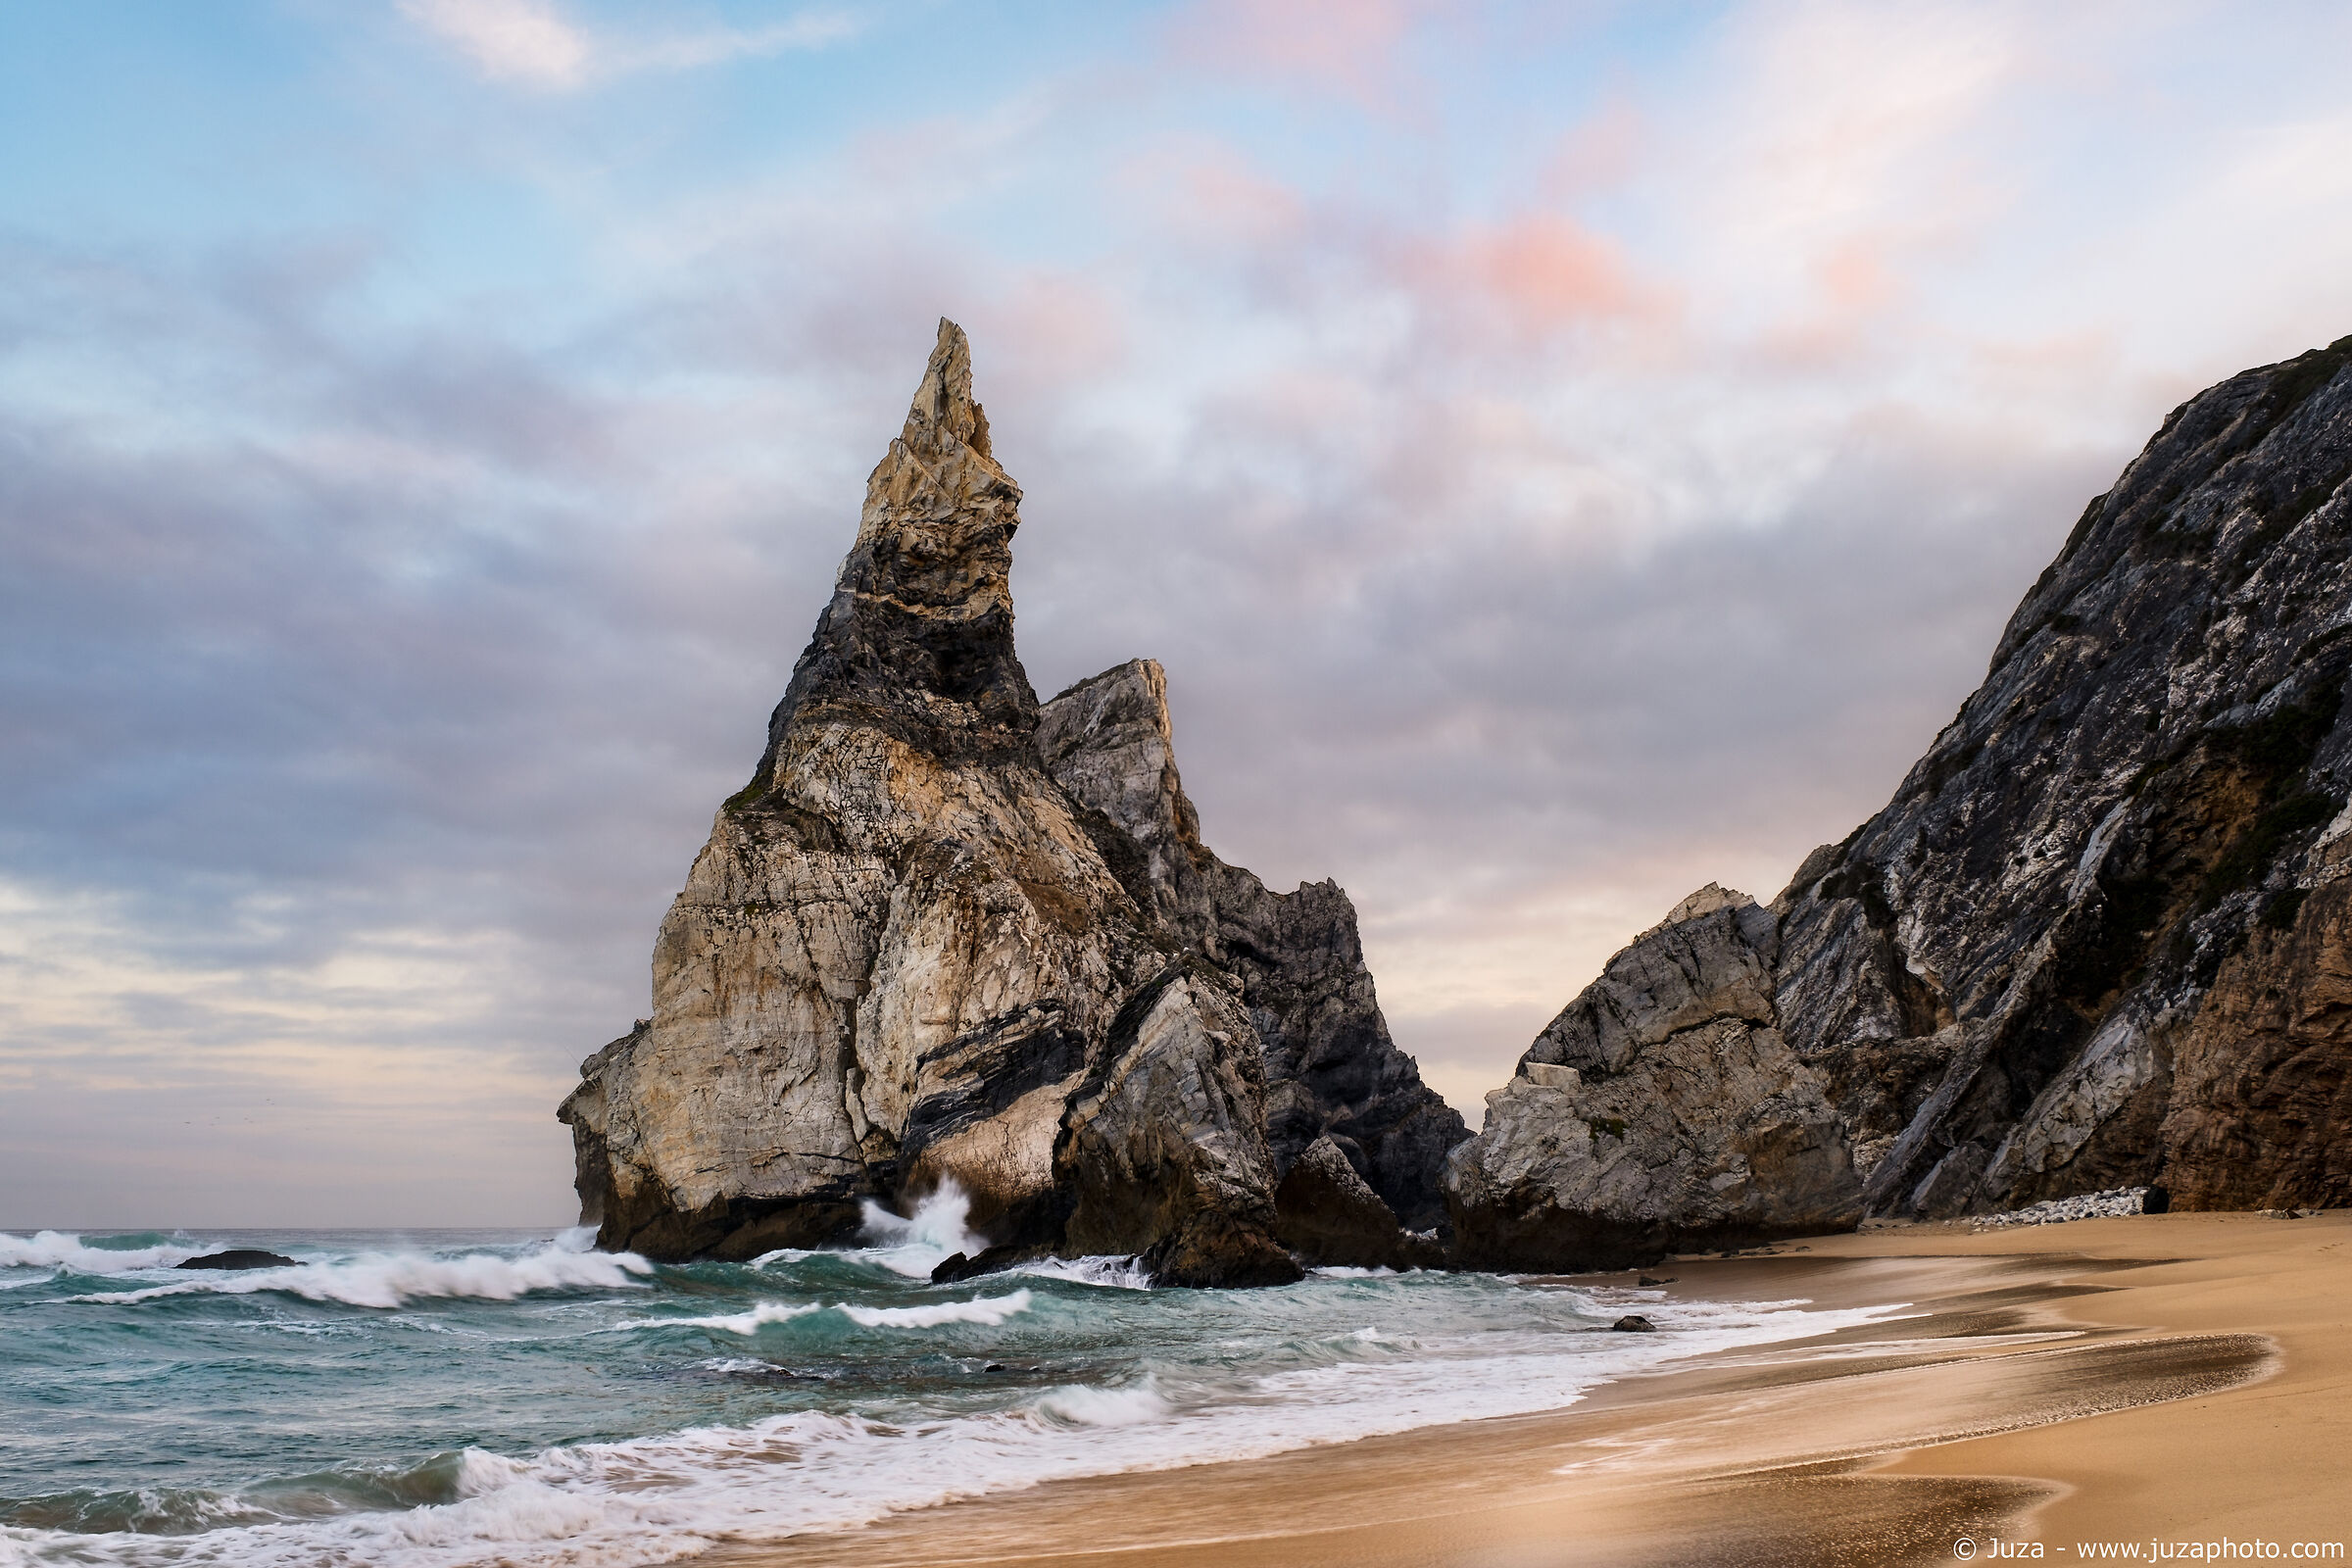 The cliffs of Praia da Ursa...